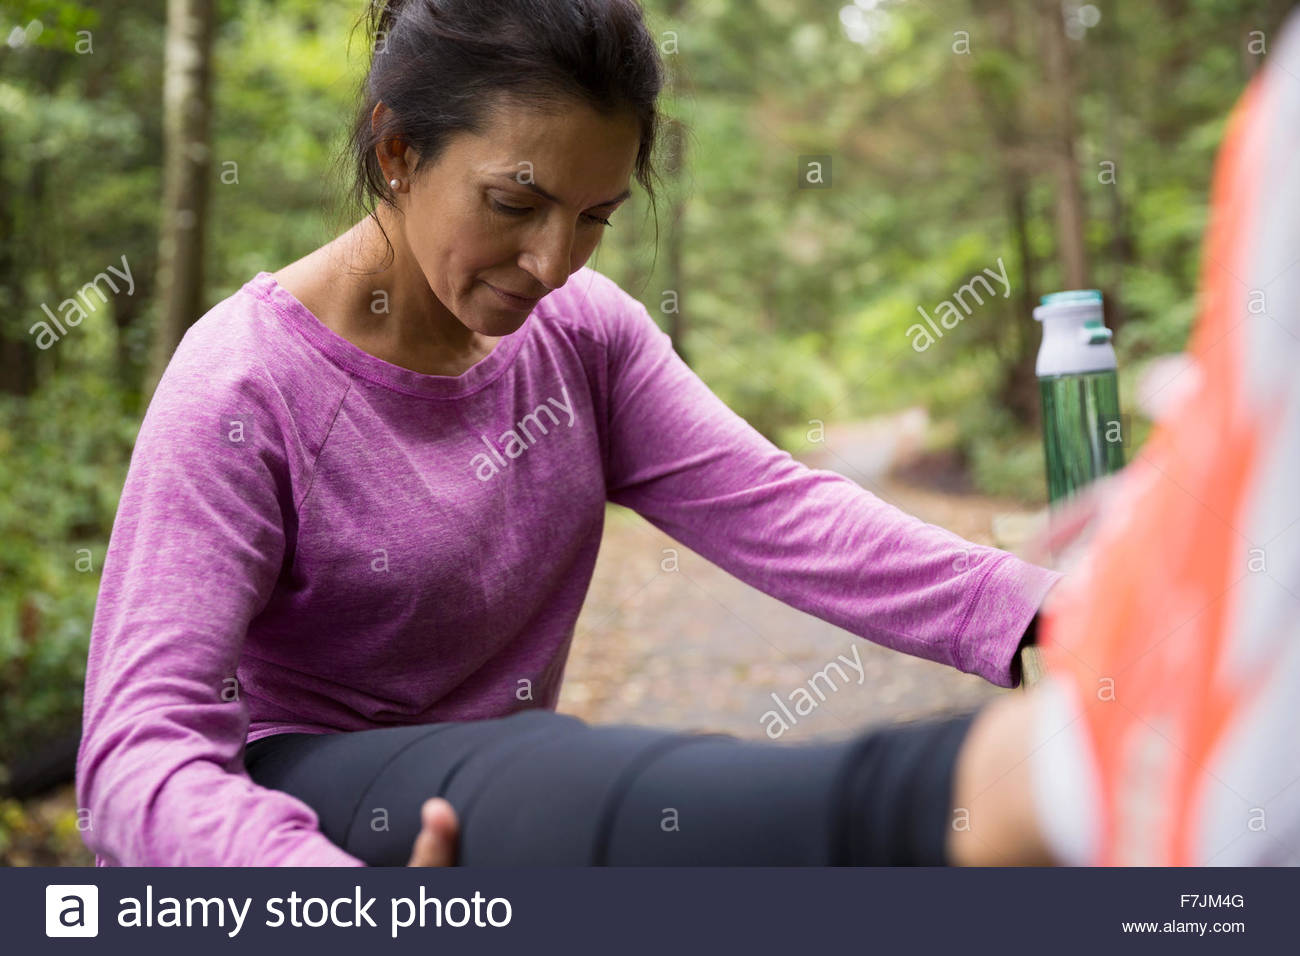 Woman stretching leg préparation de l'exécution dans les bois Banque D'Images